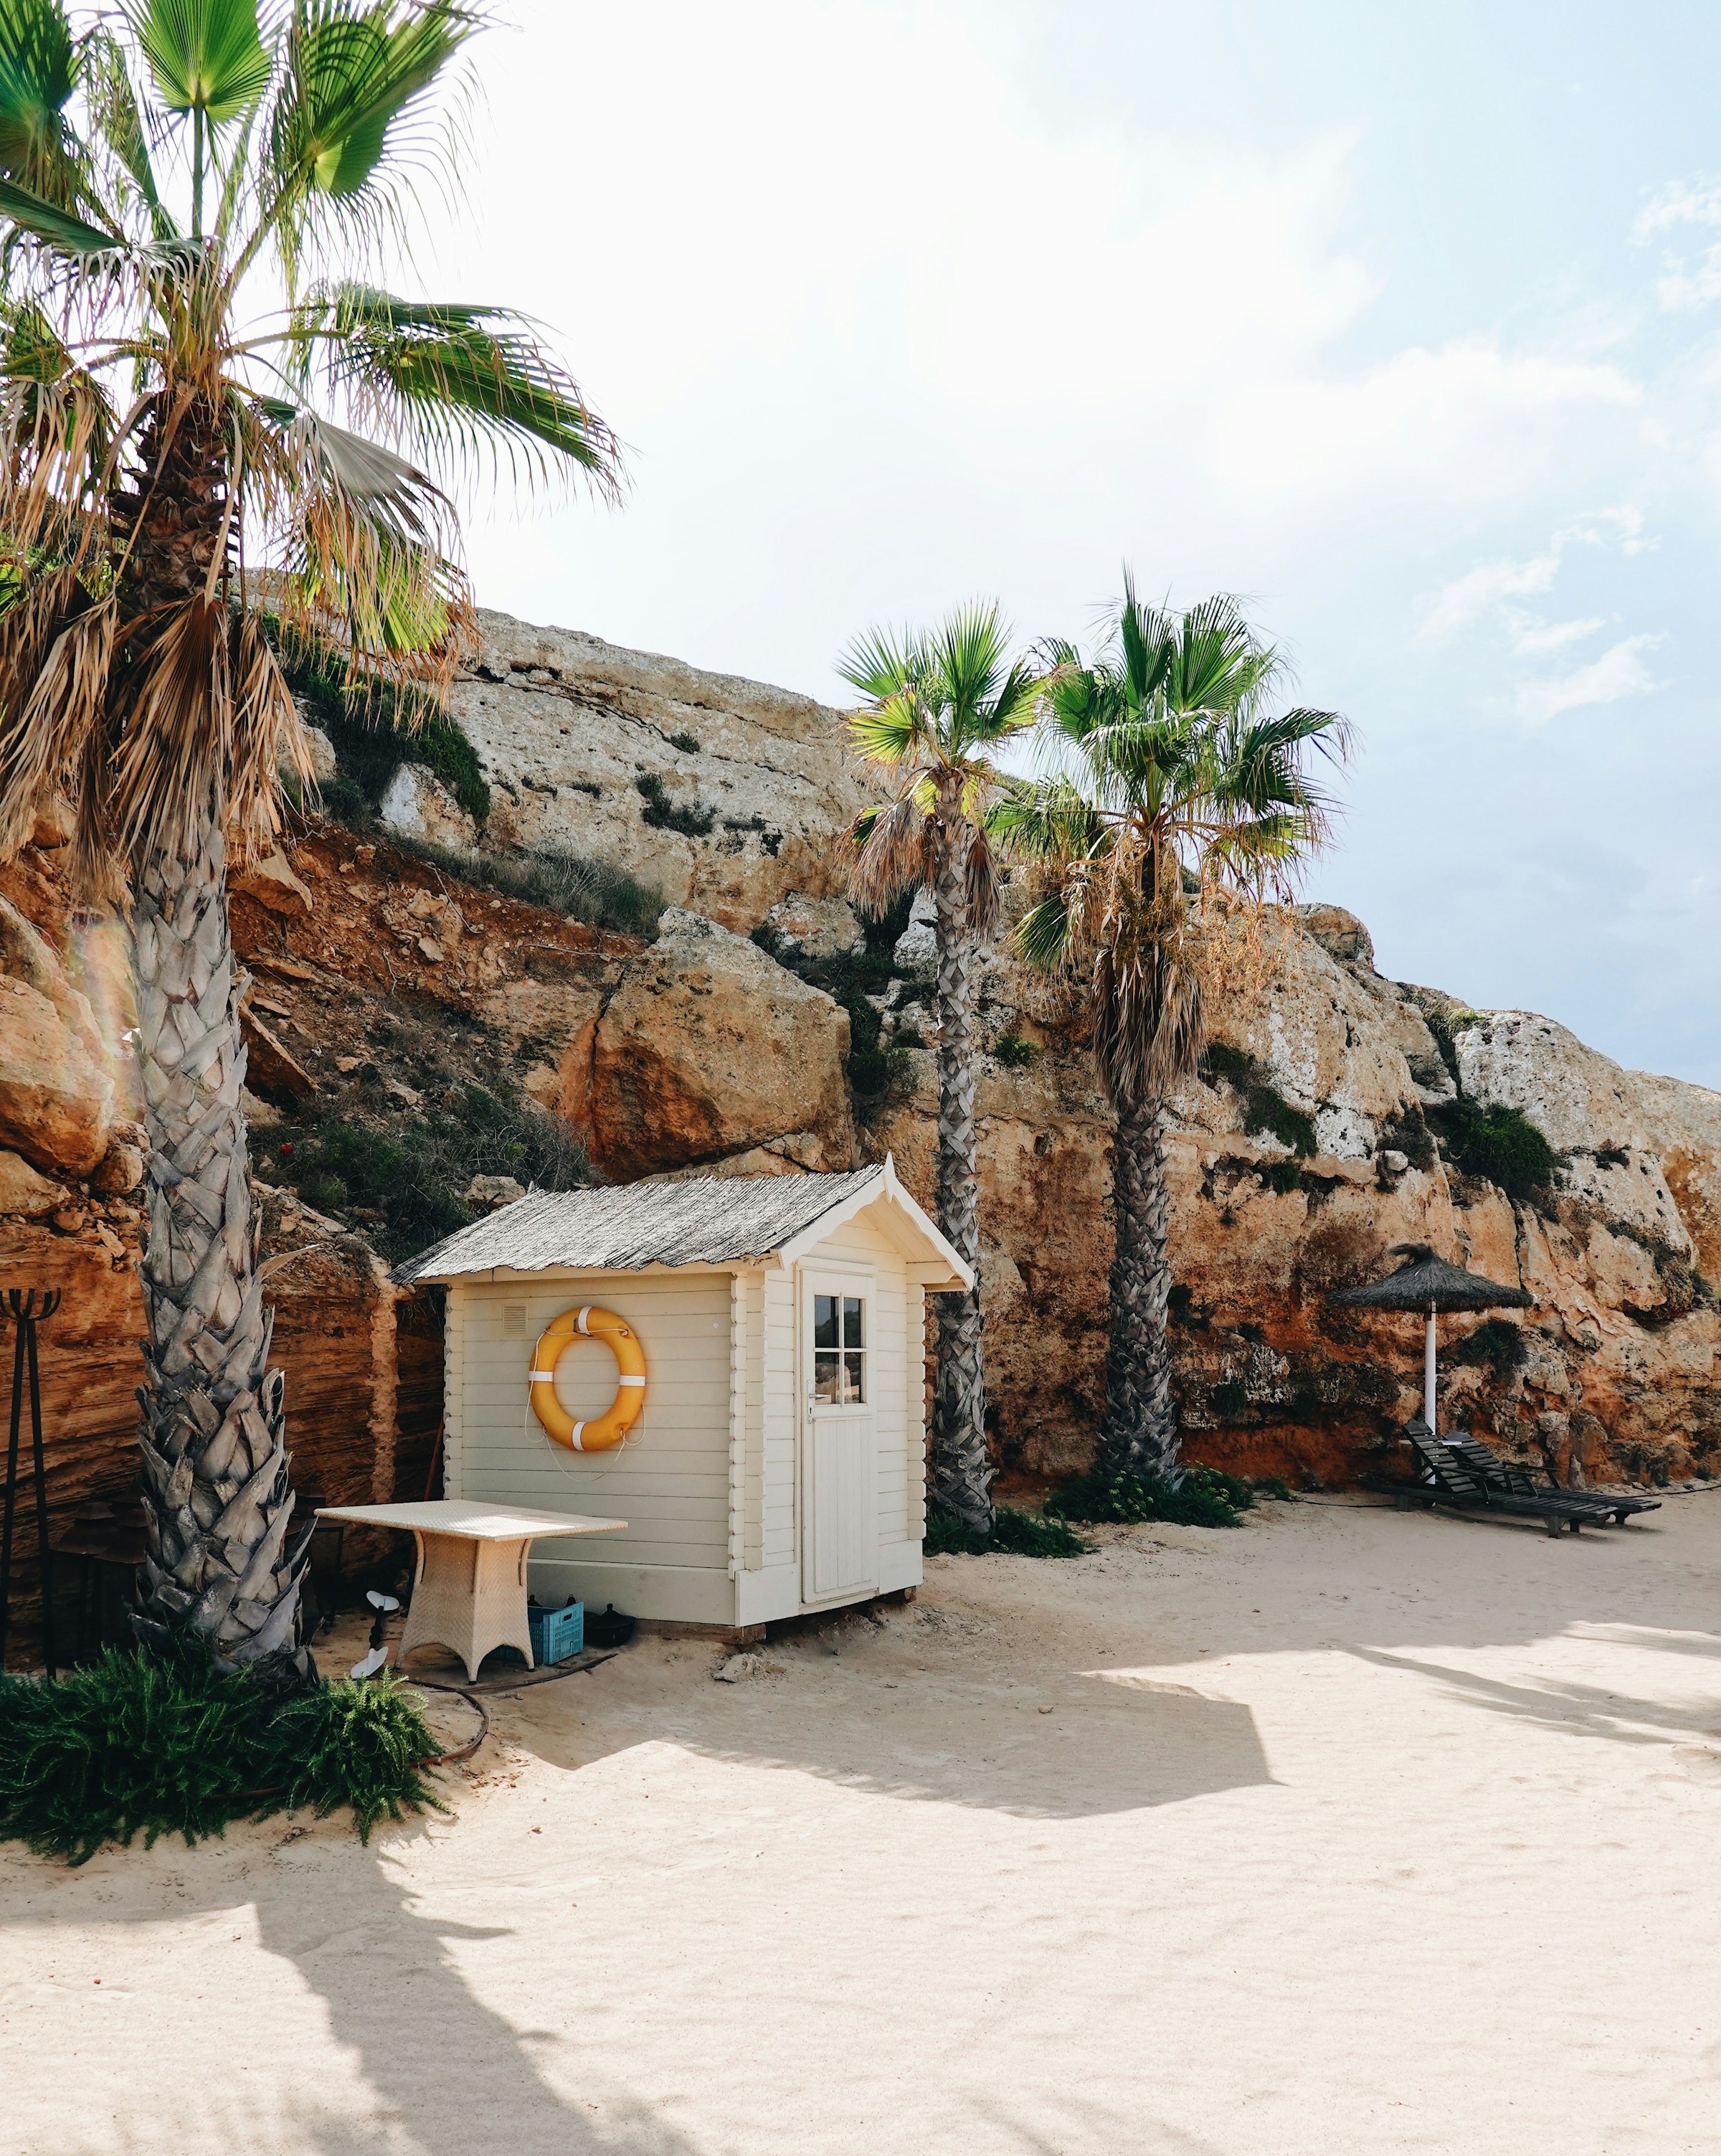 Vit strandstuga med livboj nära palmer och klippiga klippor på en solig dag på Mallorca.